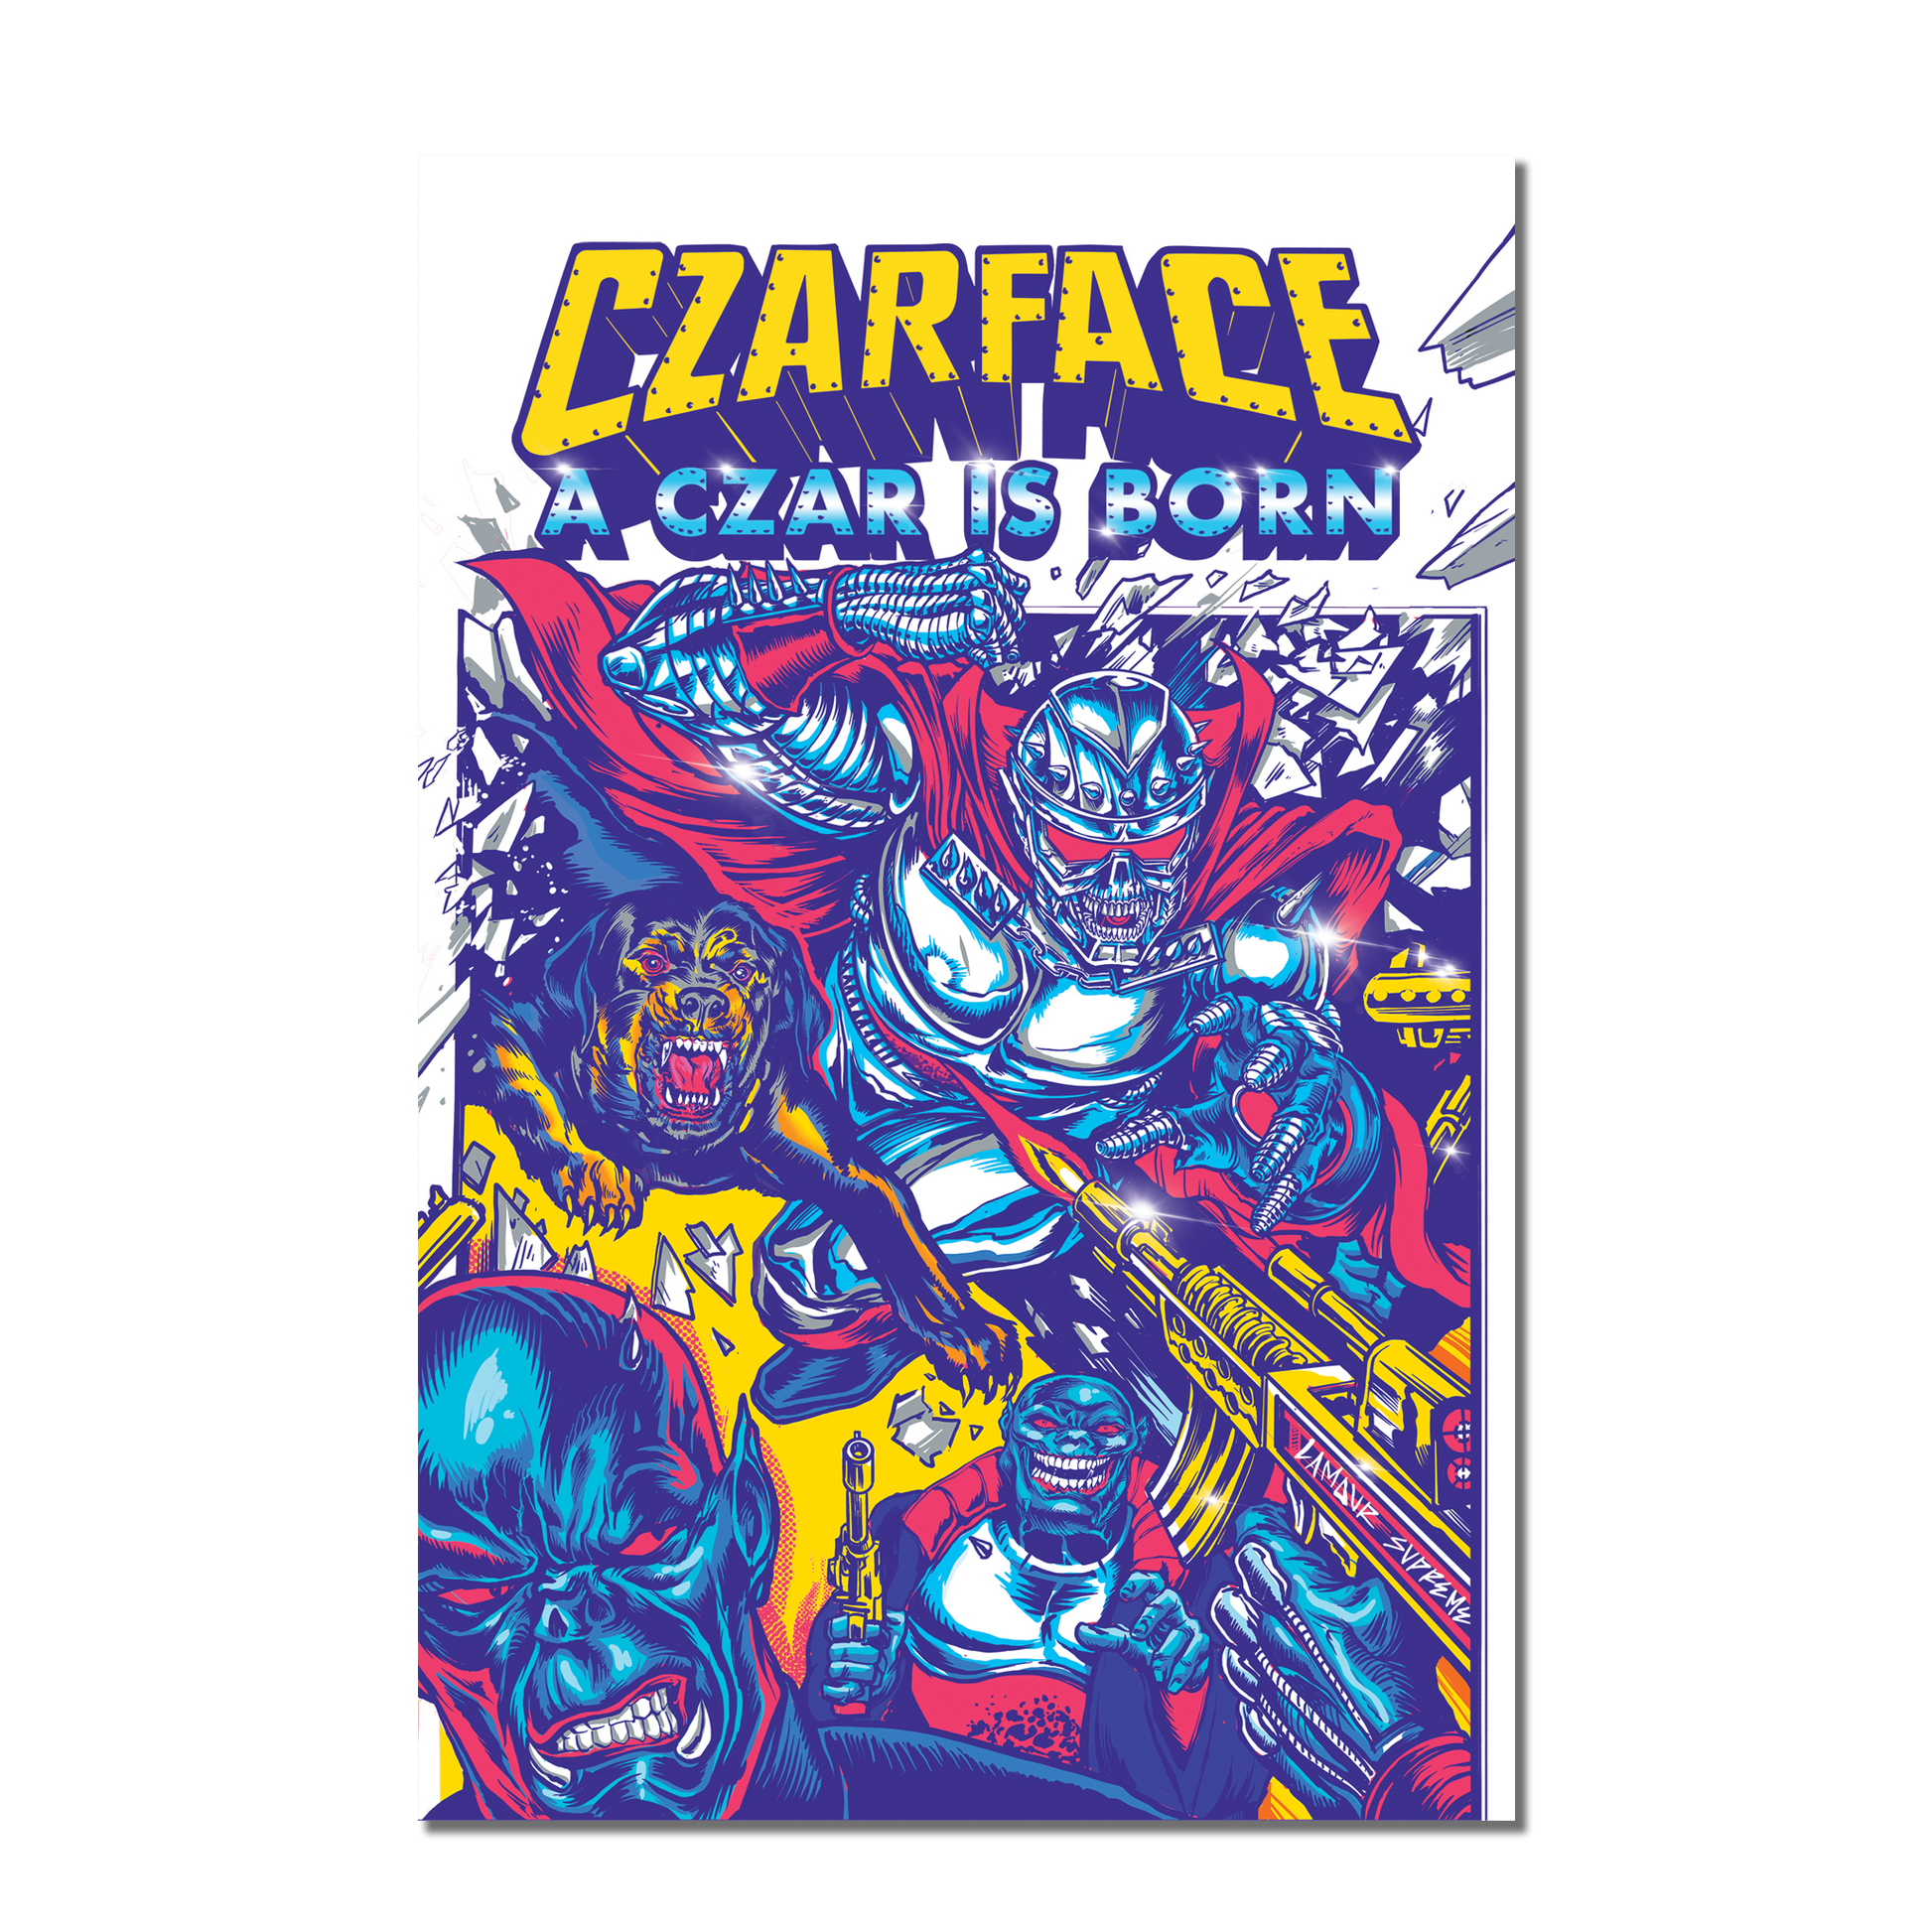 Czarface: A Czar is Born Graphic Novel (5280042320012)